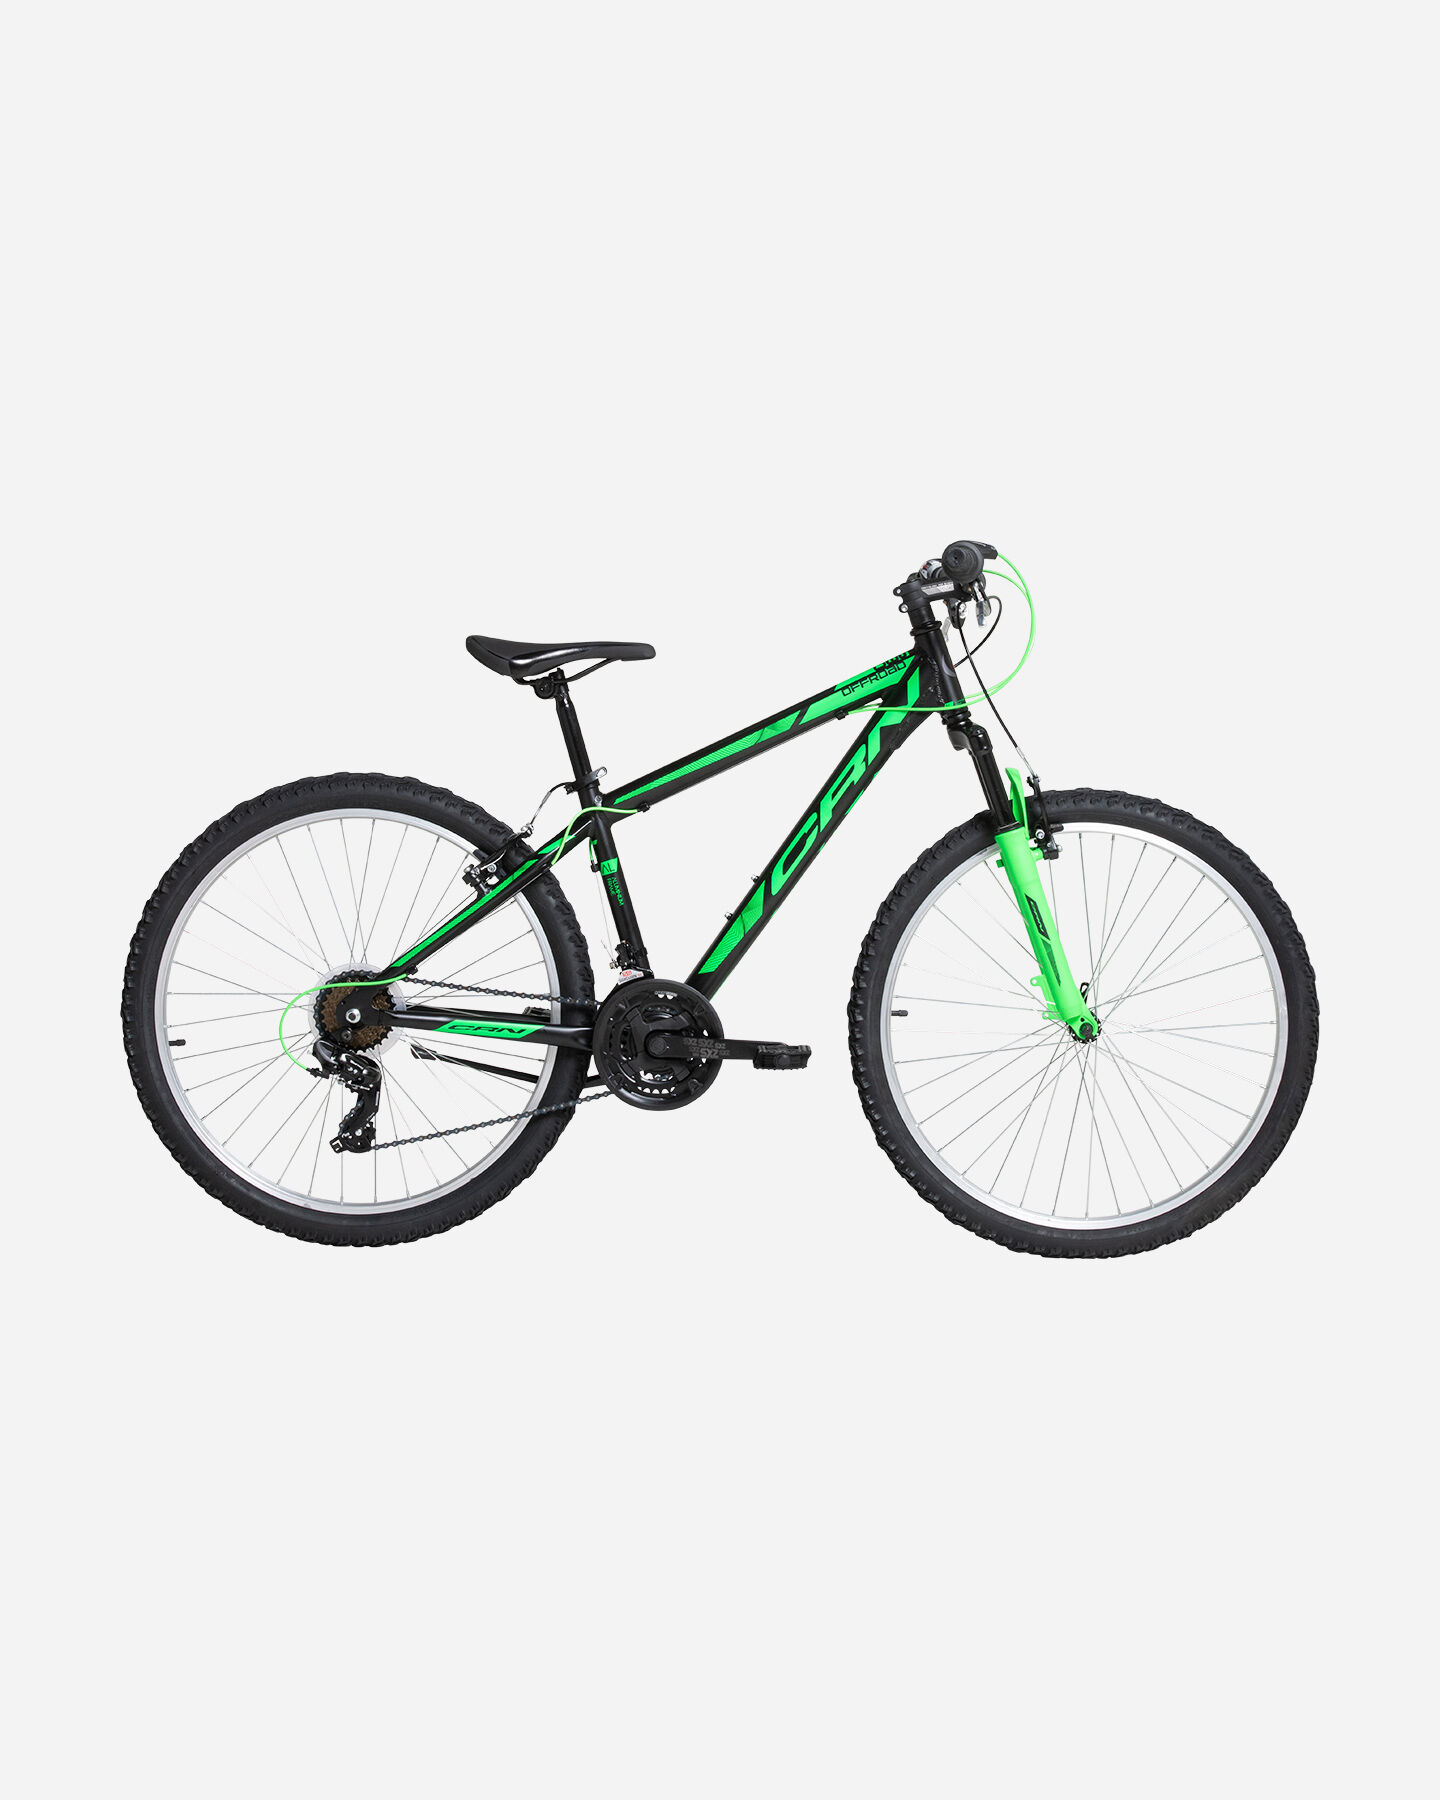  Mountain bike CARNIELLI 900 S4113186|1|15 scatto 0